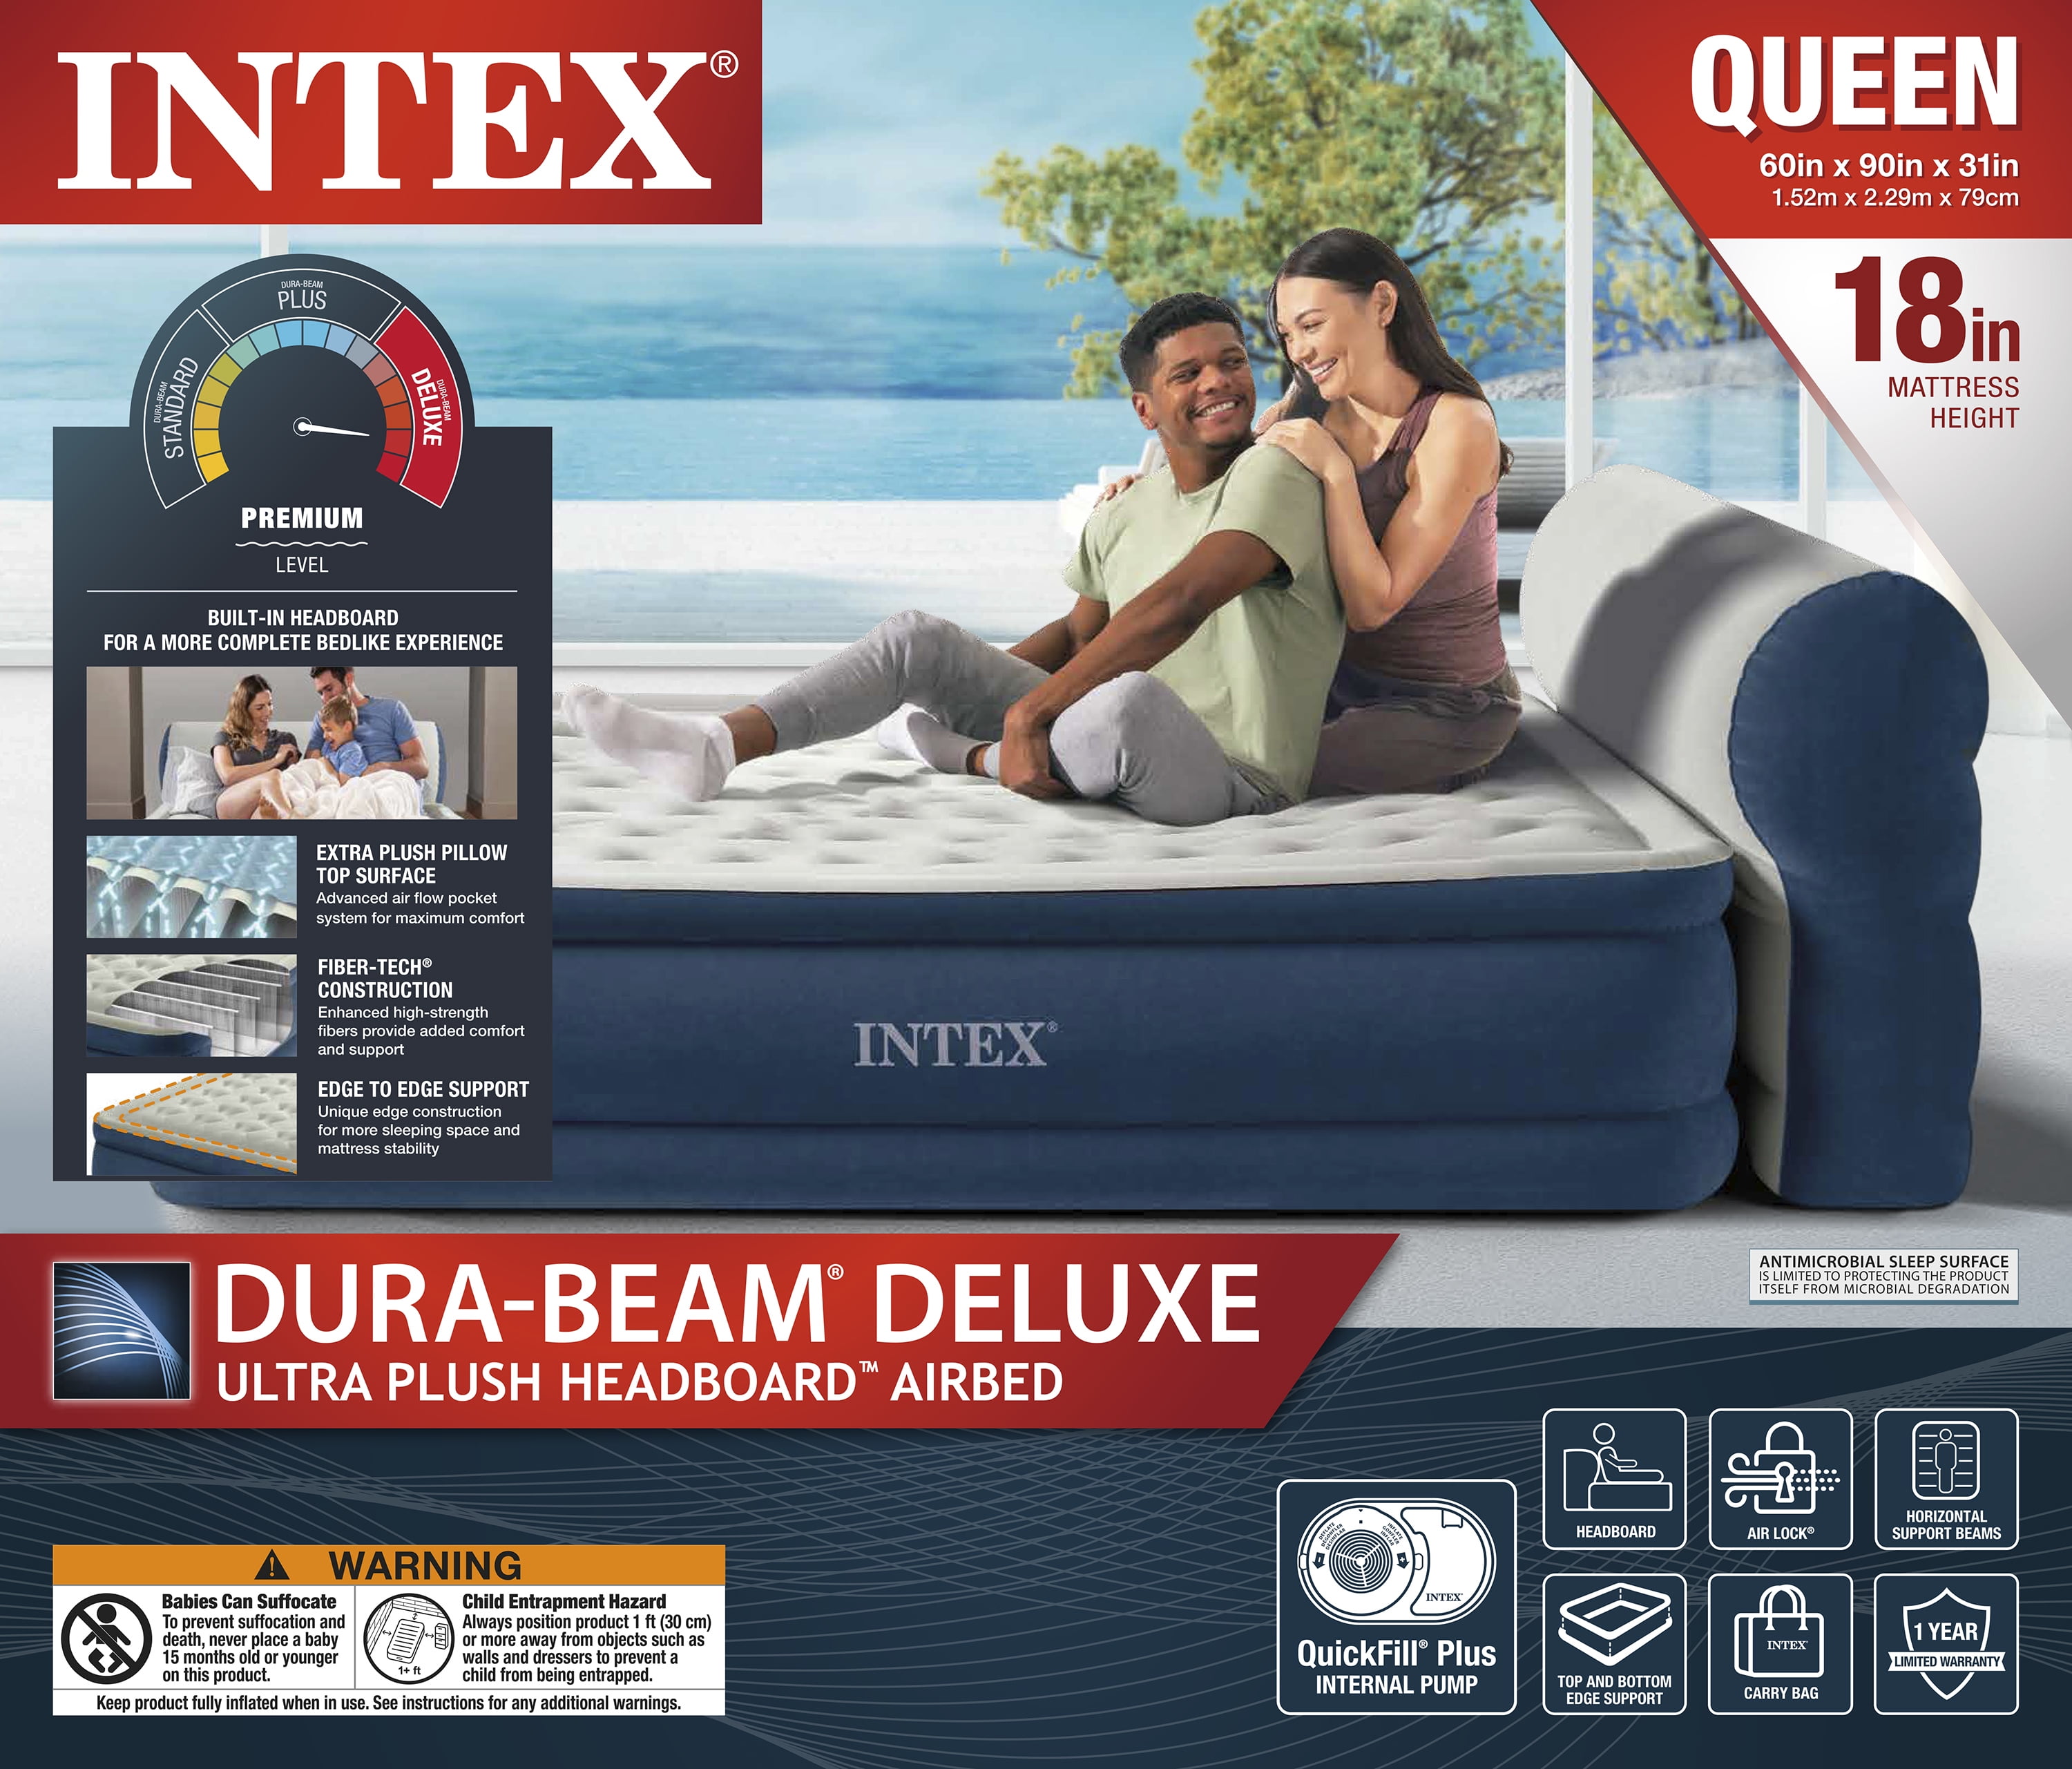 Intex Dura-Beam Deluxe Ultra Plush Headboard with Built-in Pump (18  Mattress Height) - Queen